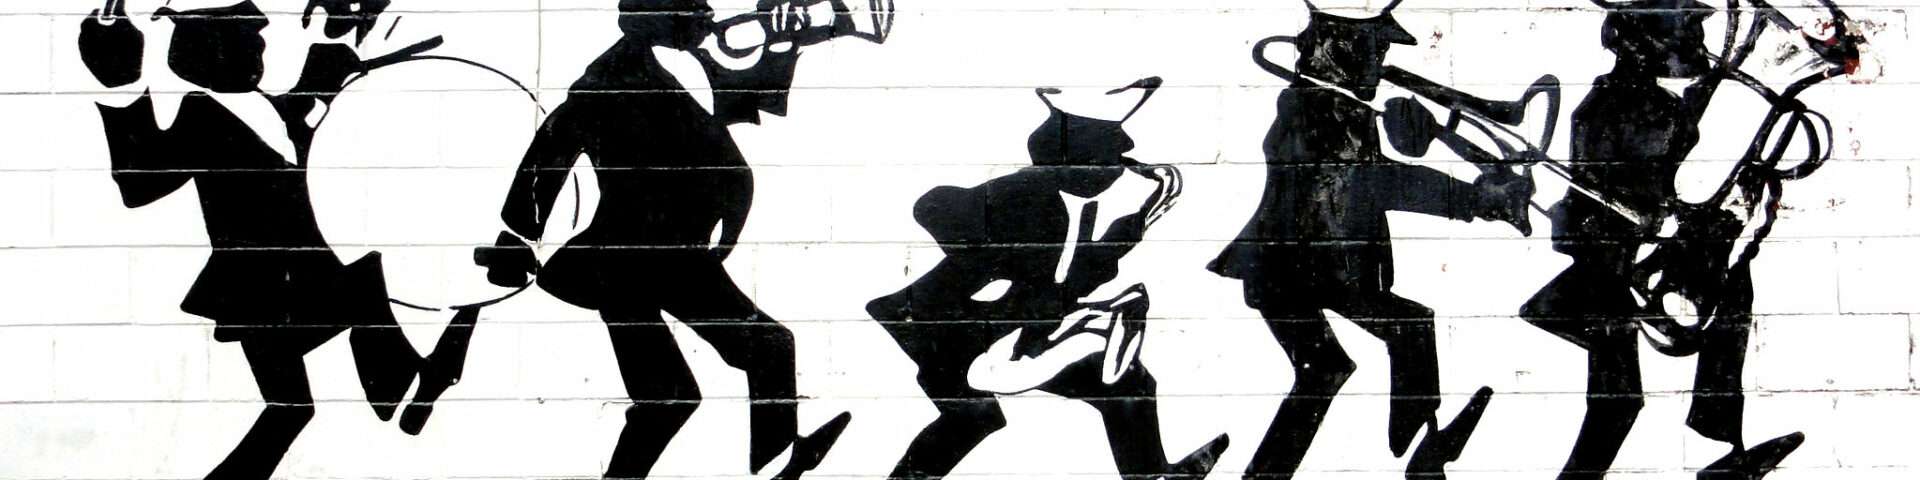 Jazz mural (street art)